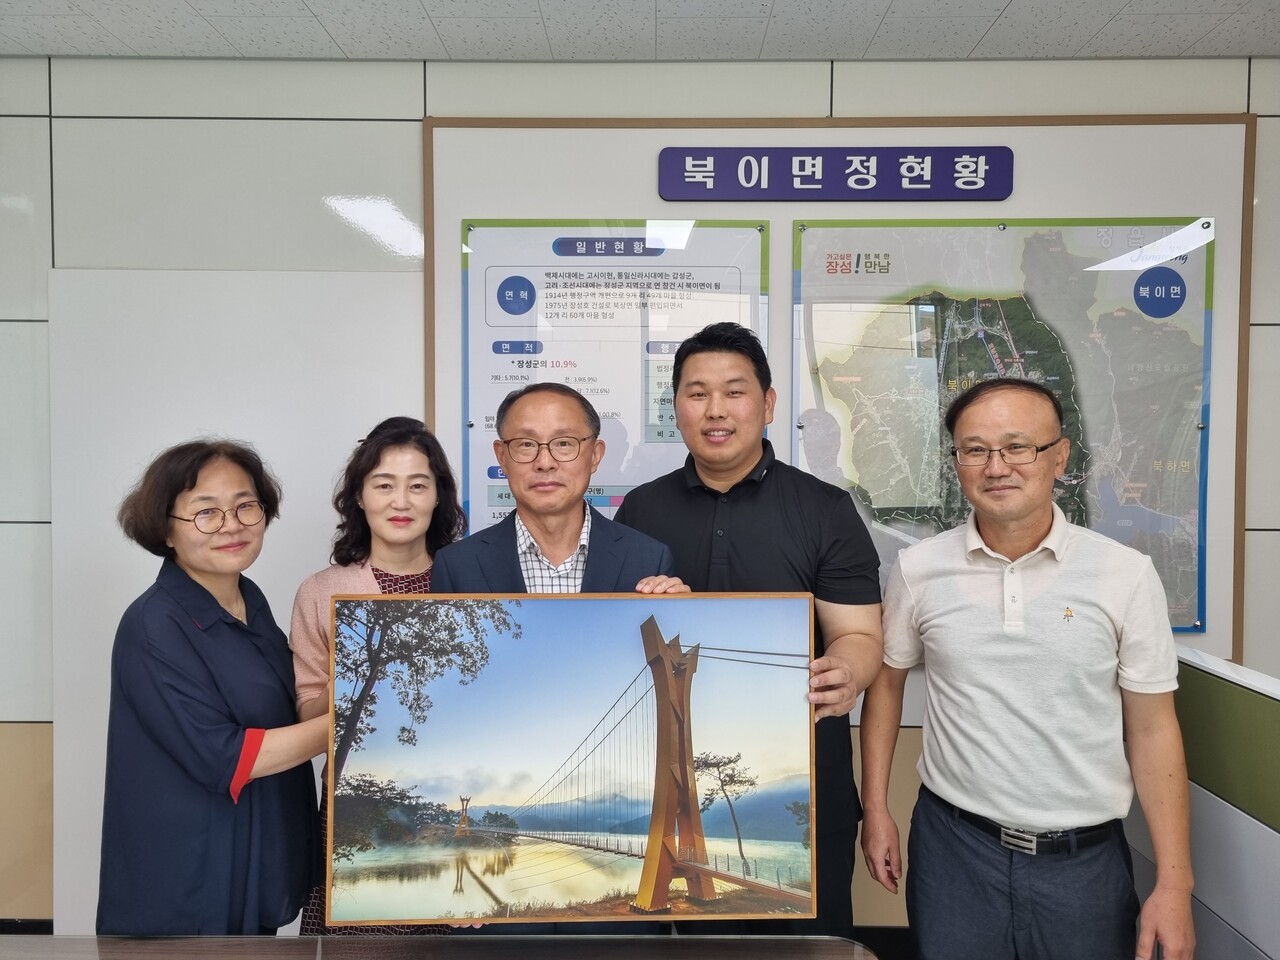 김우진 작가(사진 오른쪽에서 두번째)가 북이면행정복지센터 류현성 면장(사진 가운데)을 비롯한 직원들과 함께 기념 촬영을 하고 있다. 